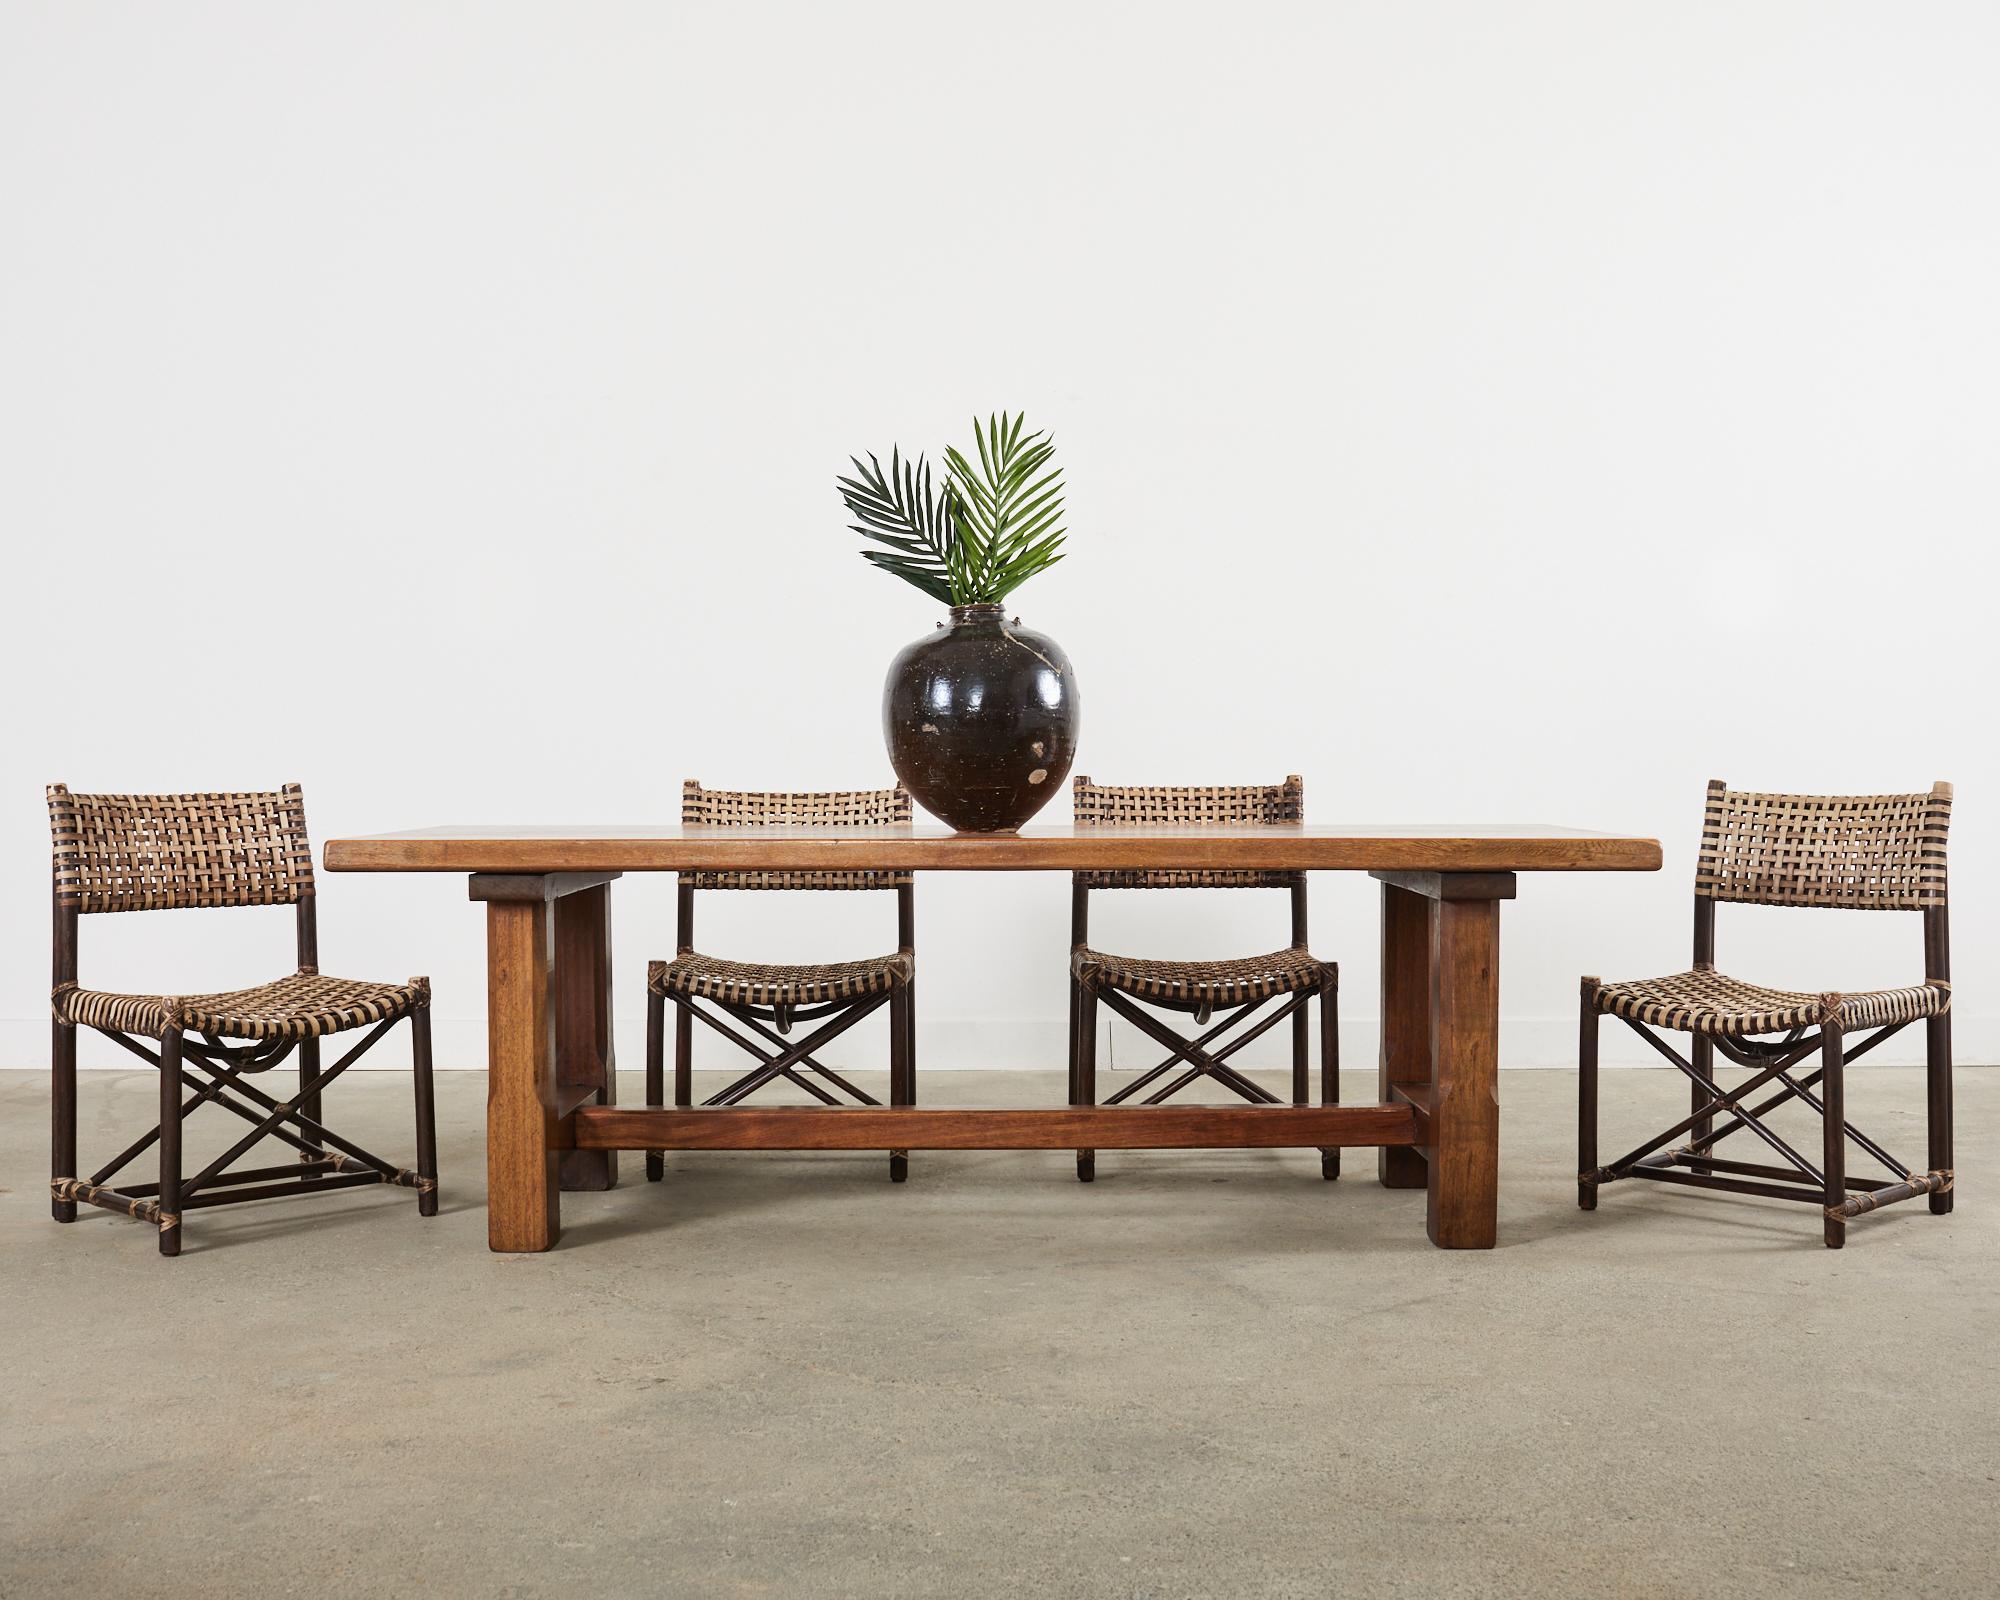 Ensemble iconique de quatre chaises de salle à manger en rotin en cuir brut lacé, fabriquées dans le style moderne organique côtier californien par McGuire. La chaise Antalya (modèle #MCLM44) est composée d'un cadre en rotin tressé avec des lacets